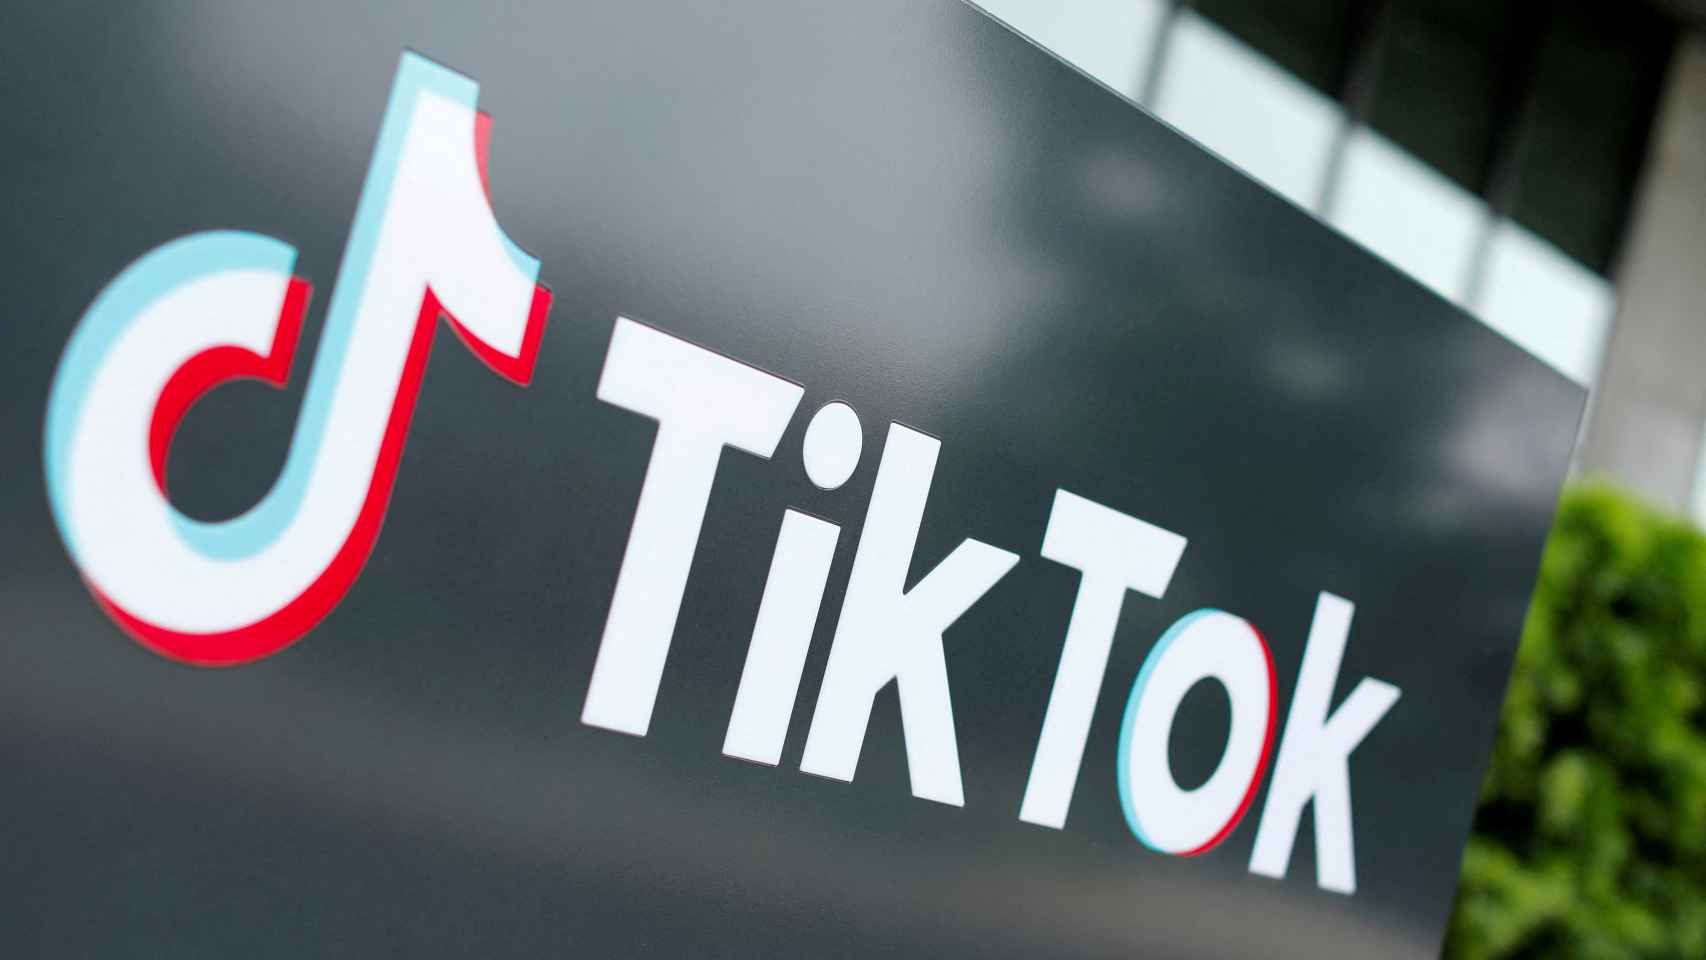 Logo de TikTok en los exteriores de las oficinas de la compañía Culver City, California (Estados Unidos).